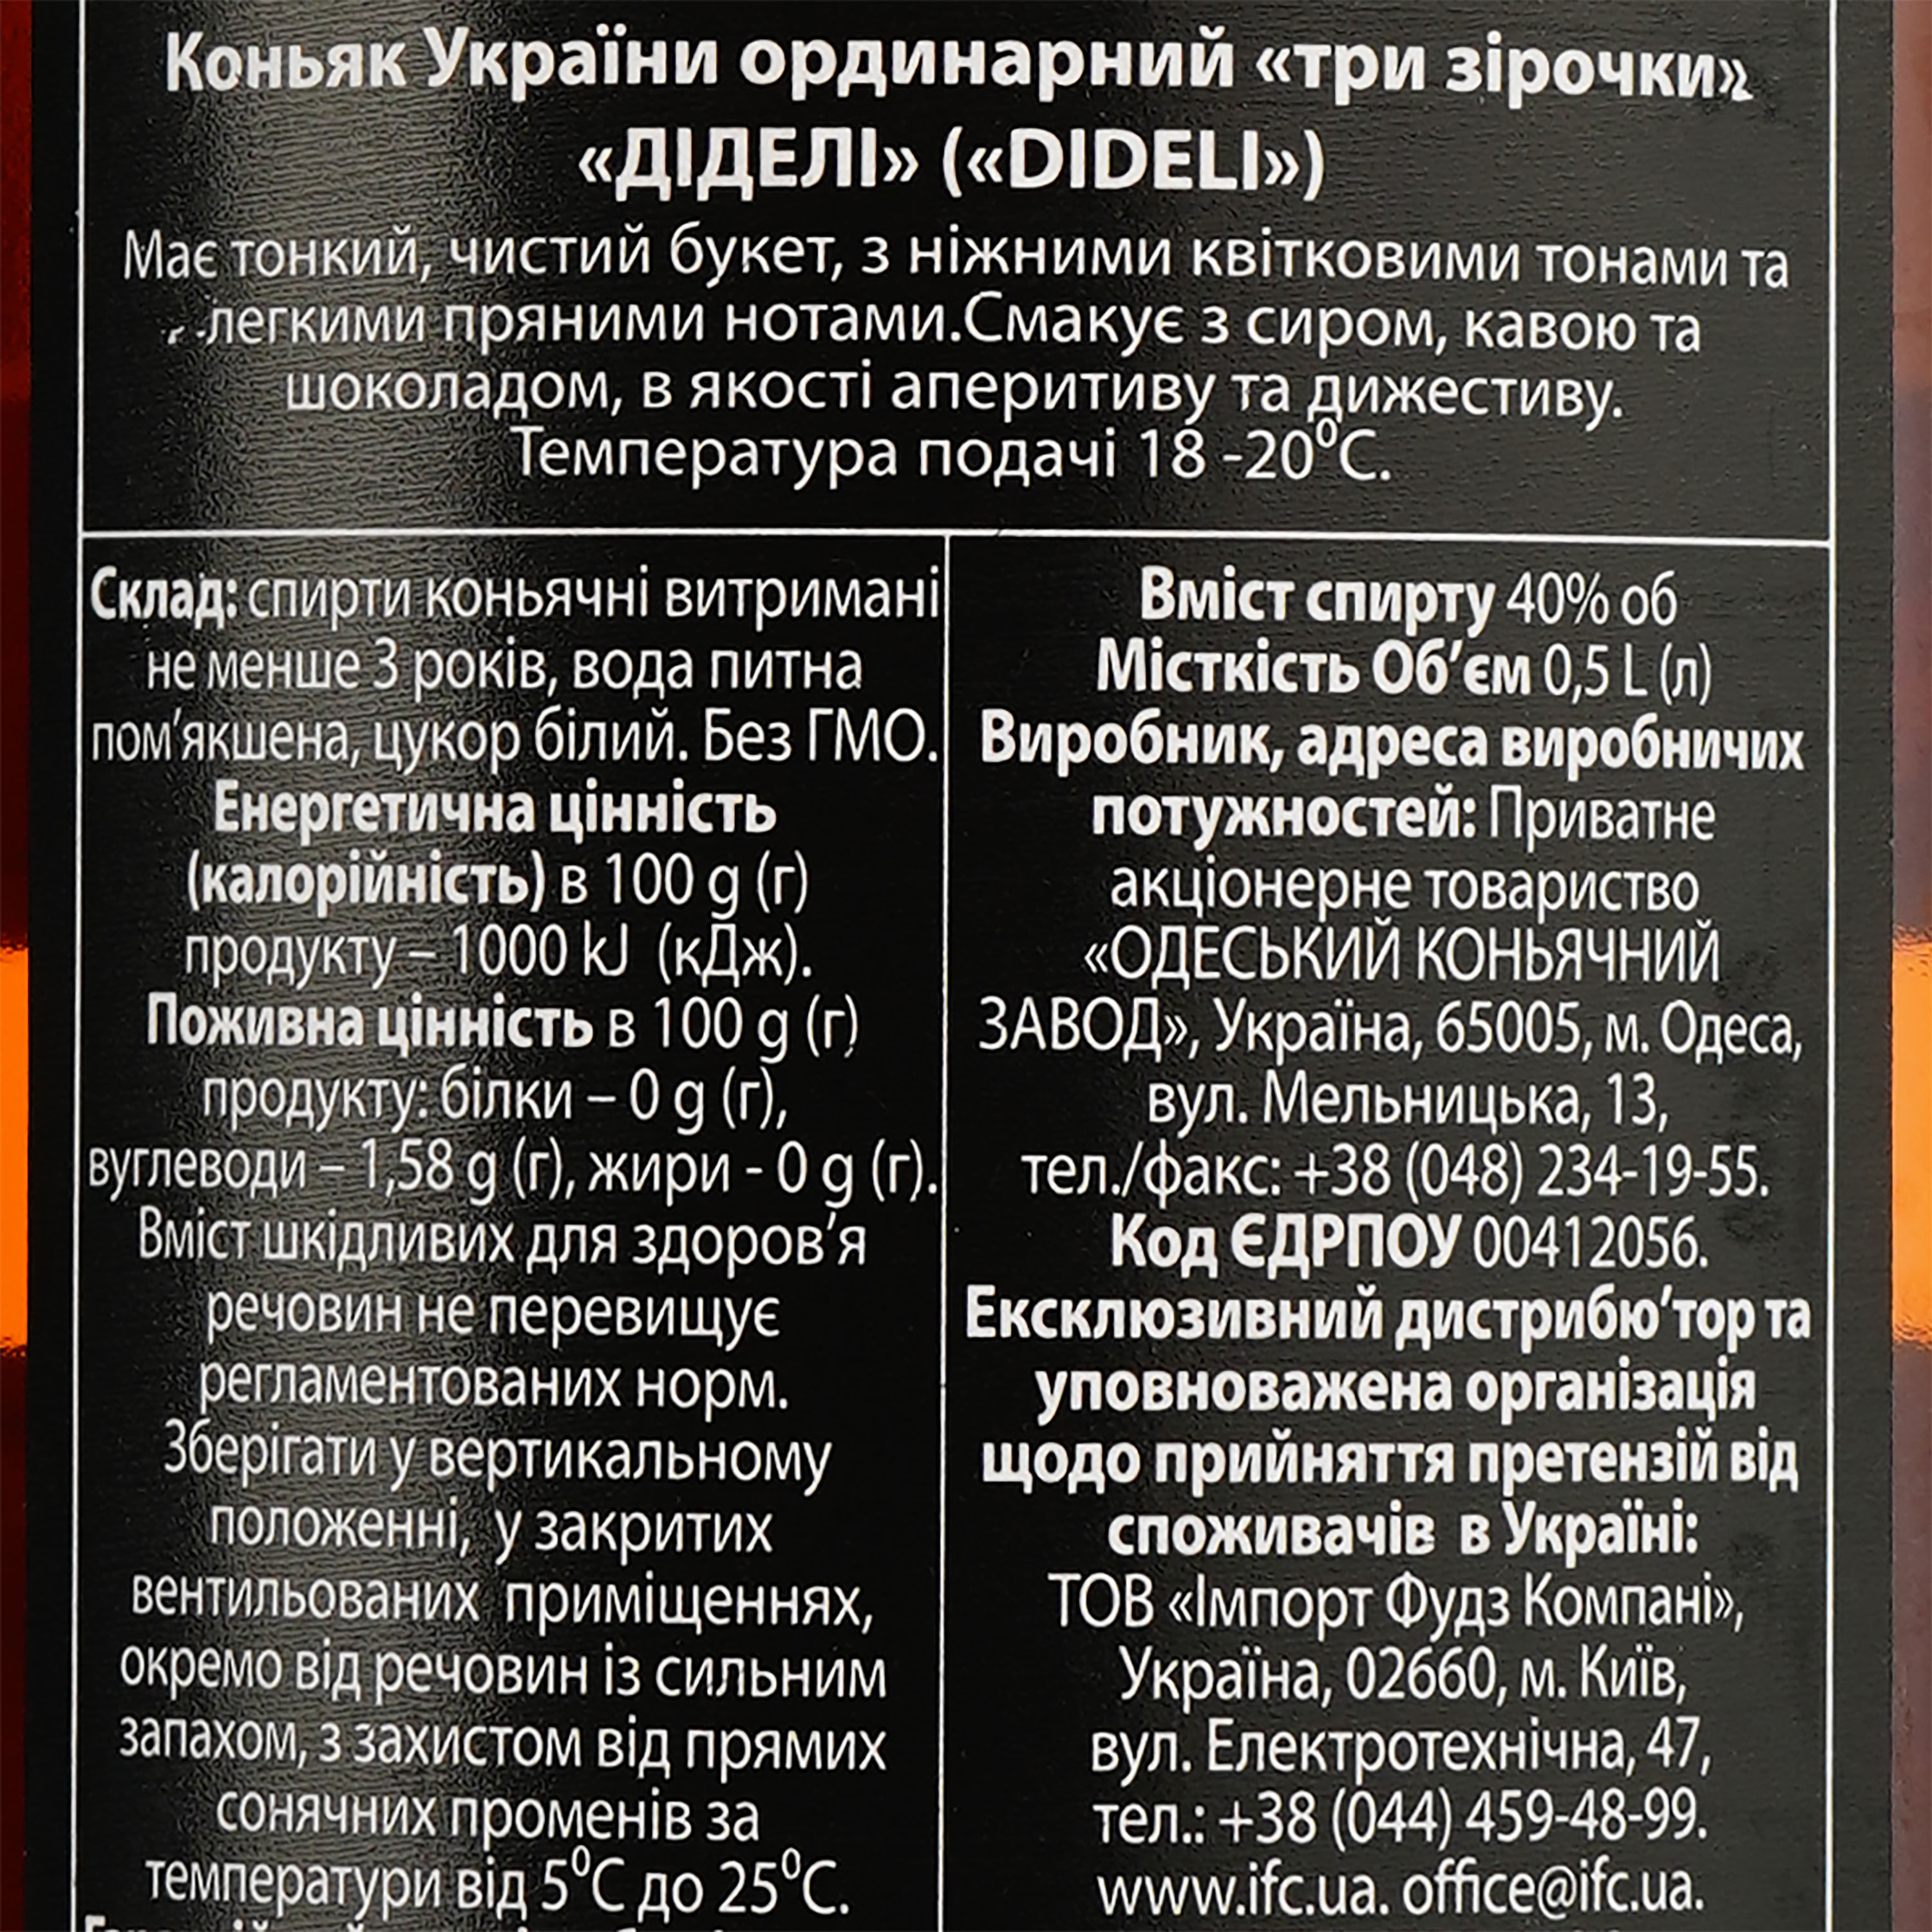 Коньяк Украины Dideli 3 звезды, ординарный, 40%, 0,5л - фото 3